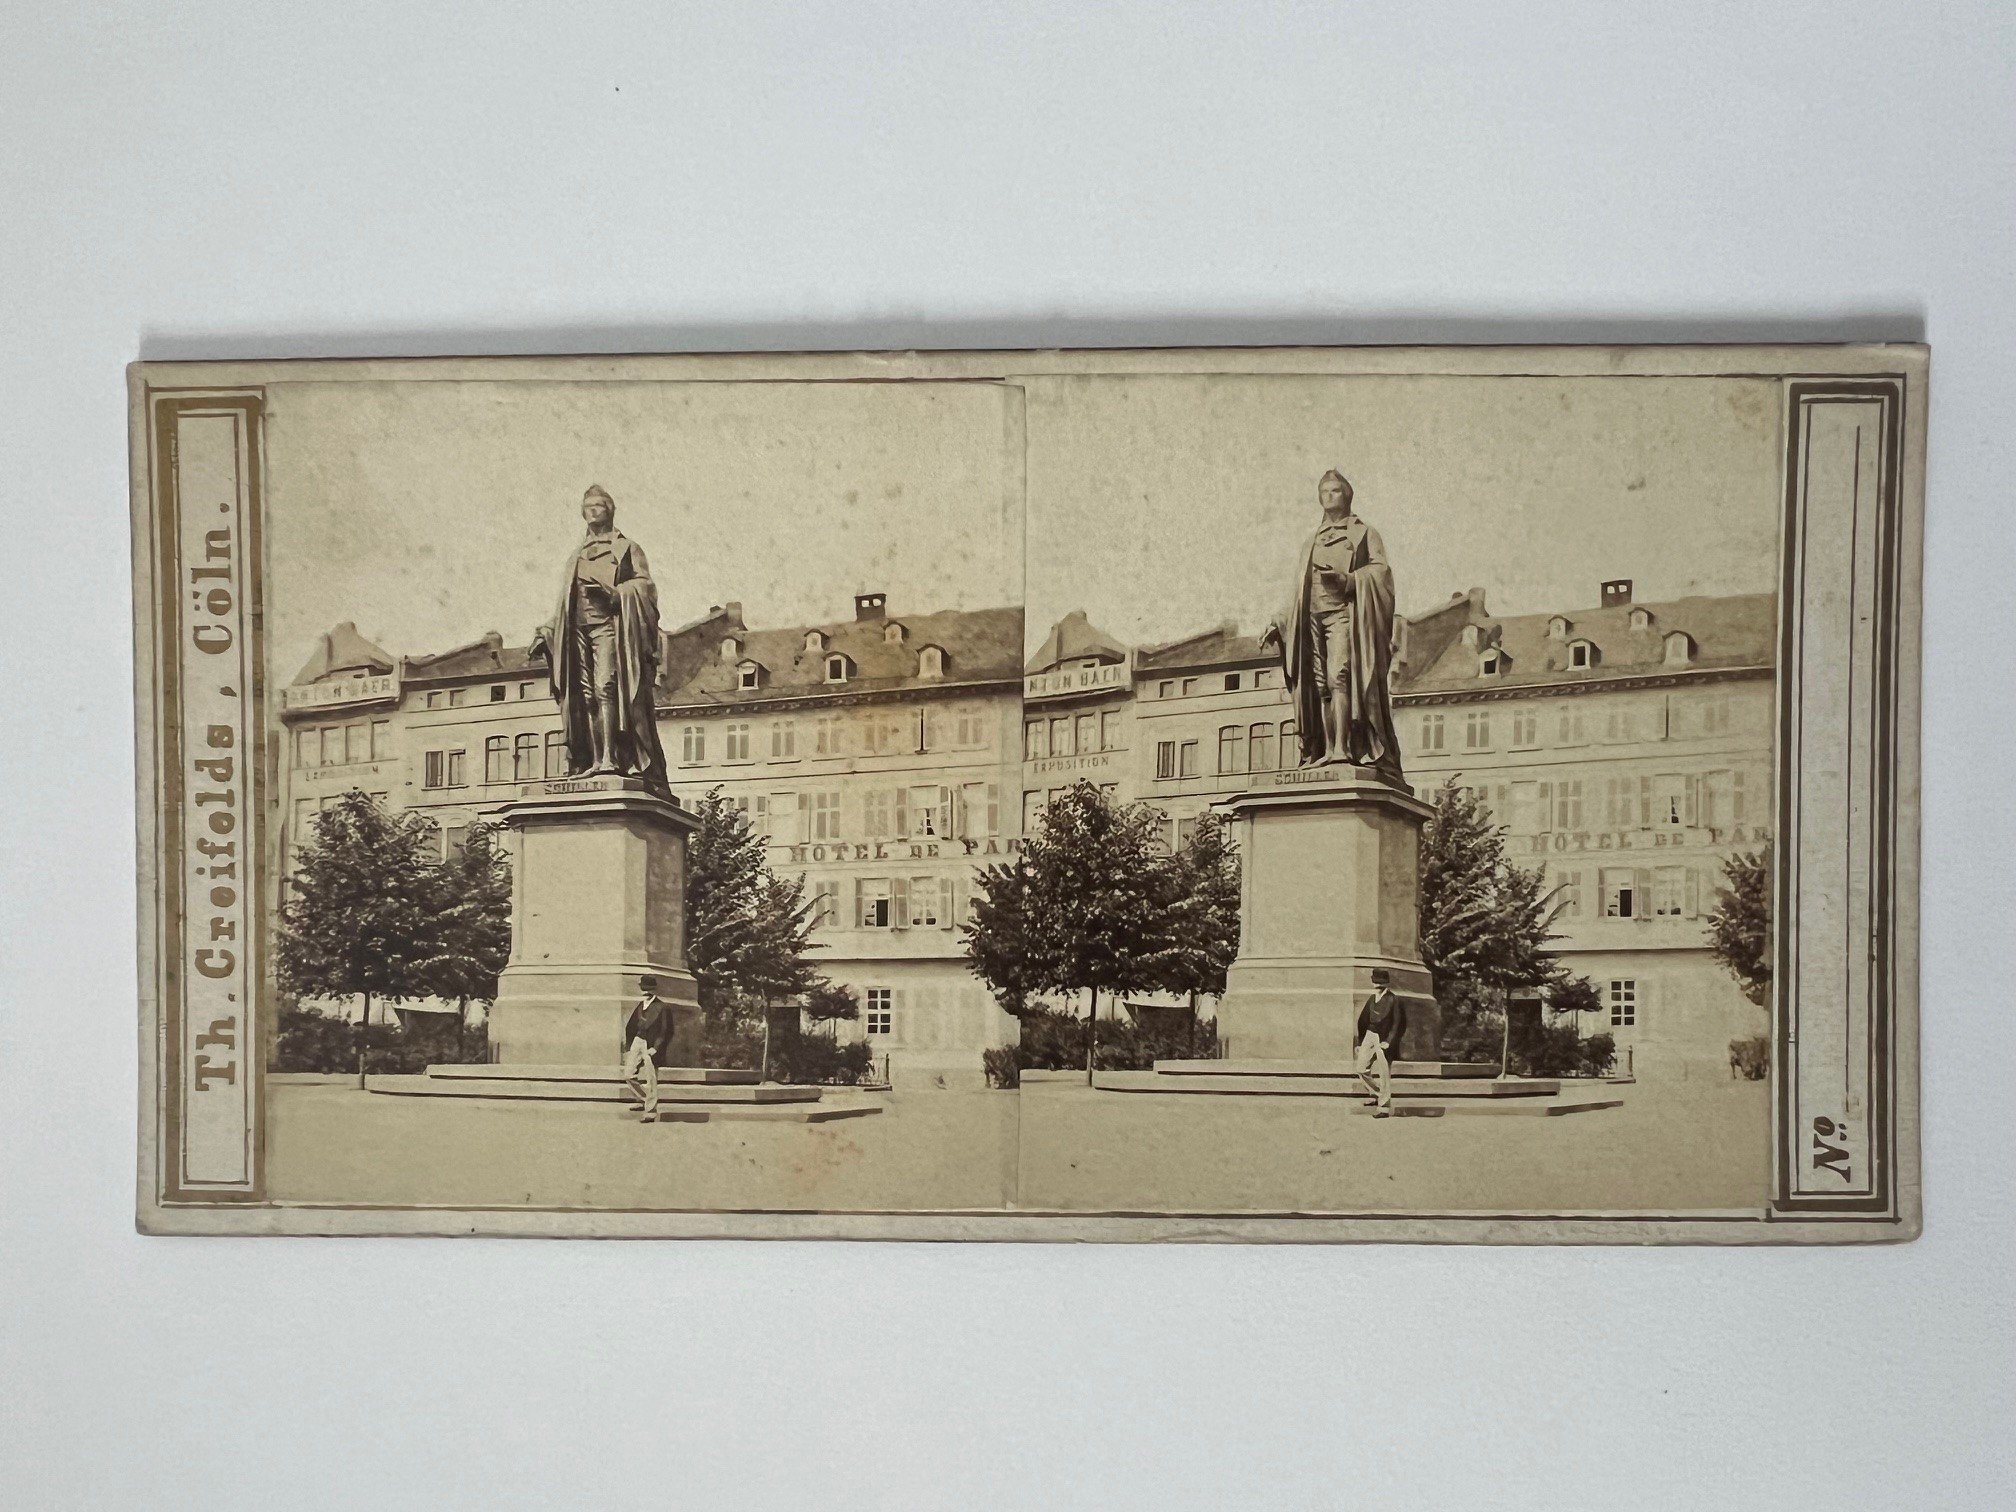 Stereobild, Theodor Creifelds, Frankfurt, Nr. 266, Schiller-Monument, ca. 1870. (Taunus-Rhein-Main - Regionalgeschichtliche Sammlung Dr. Stefan Naas CC BY-NC-SA)